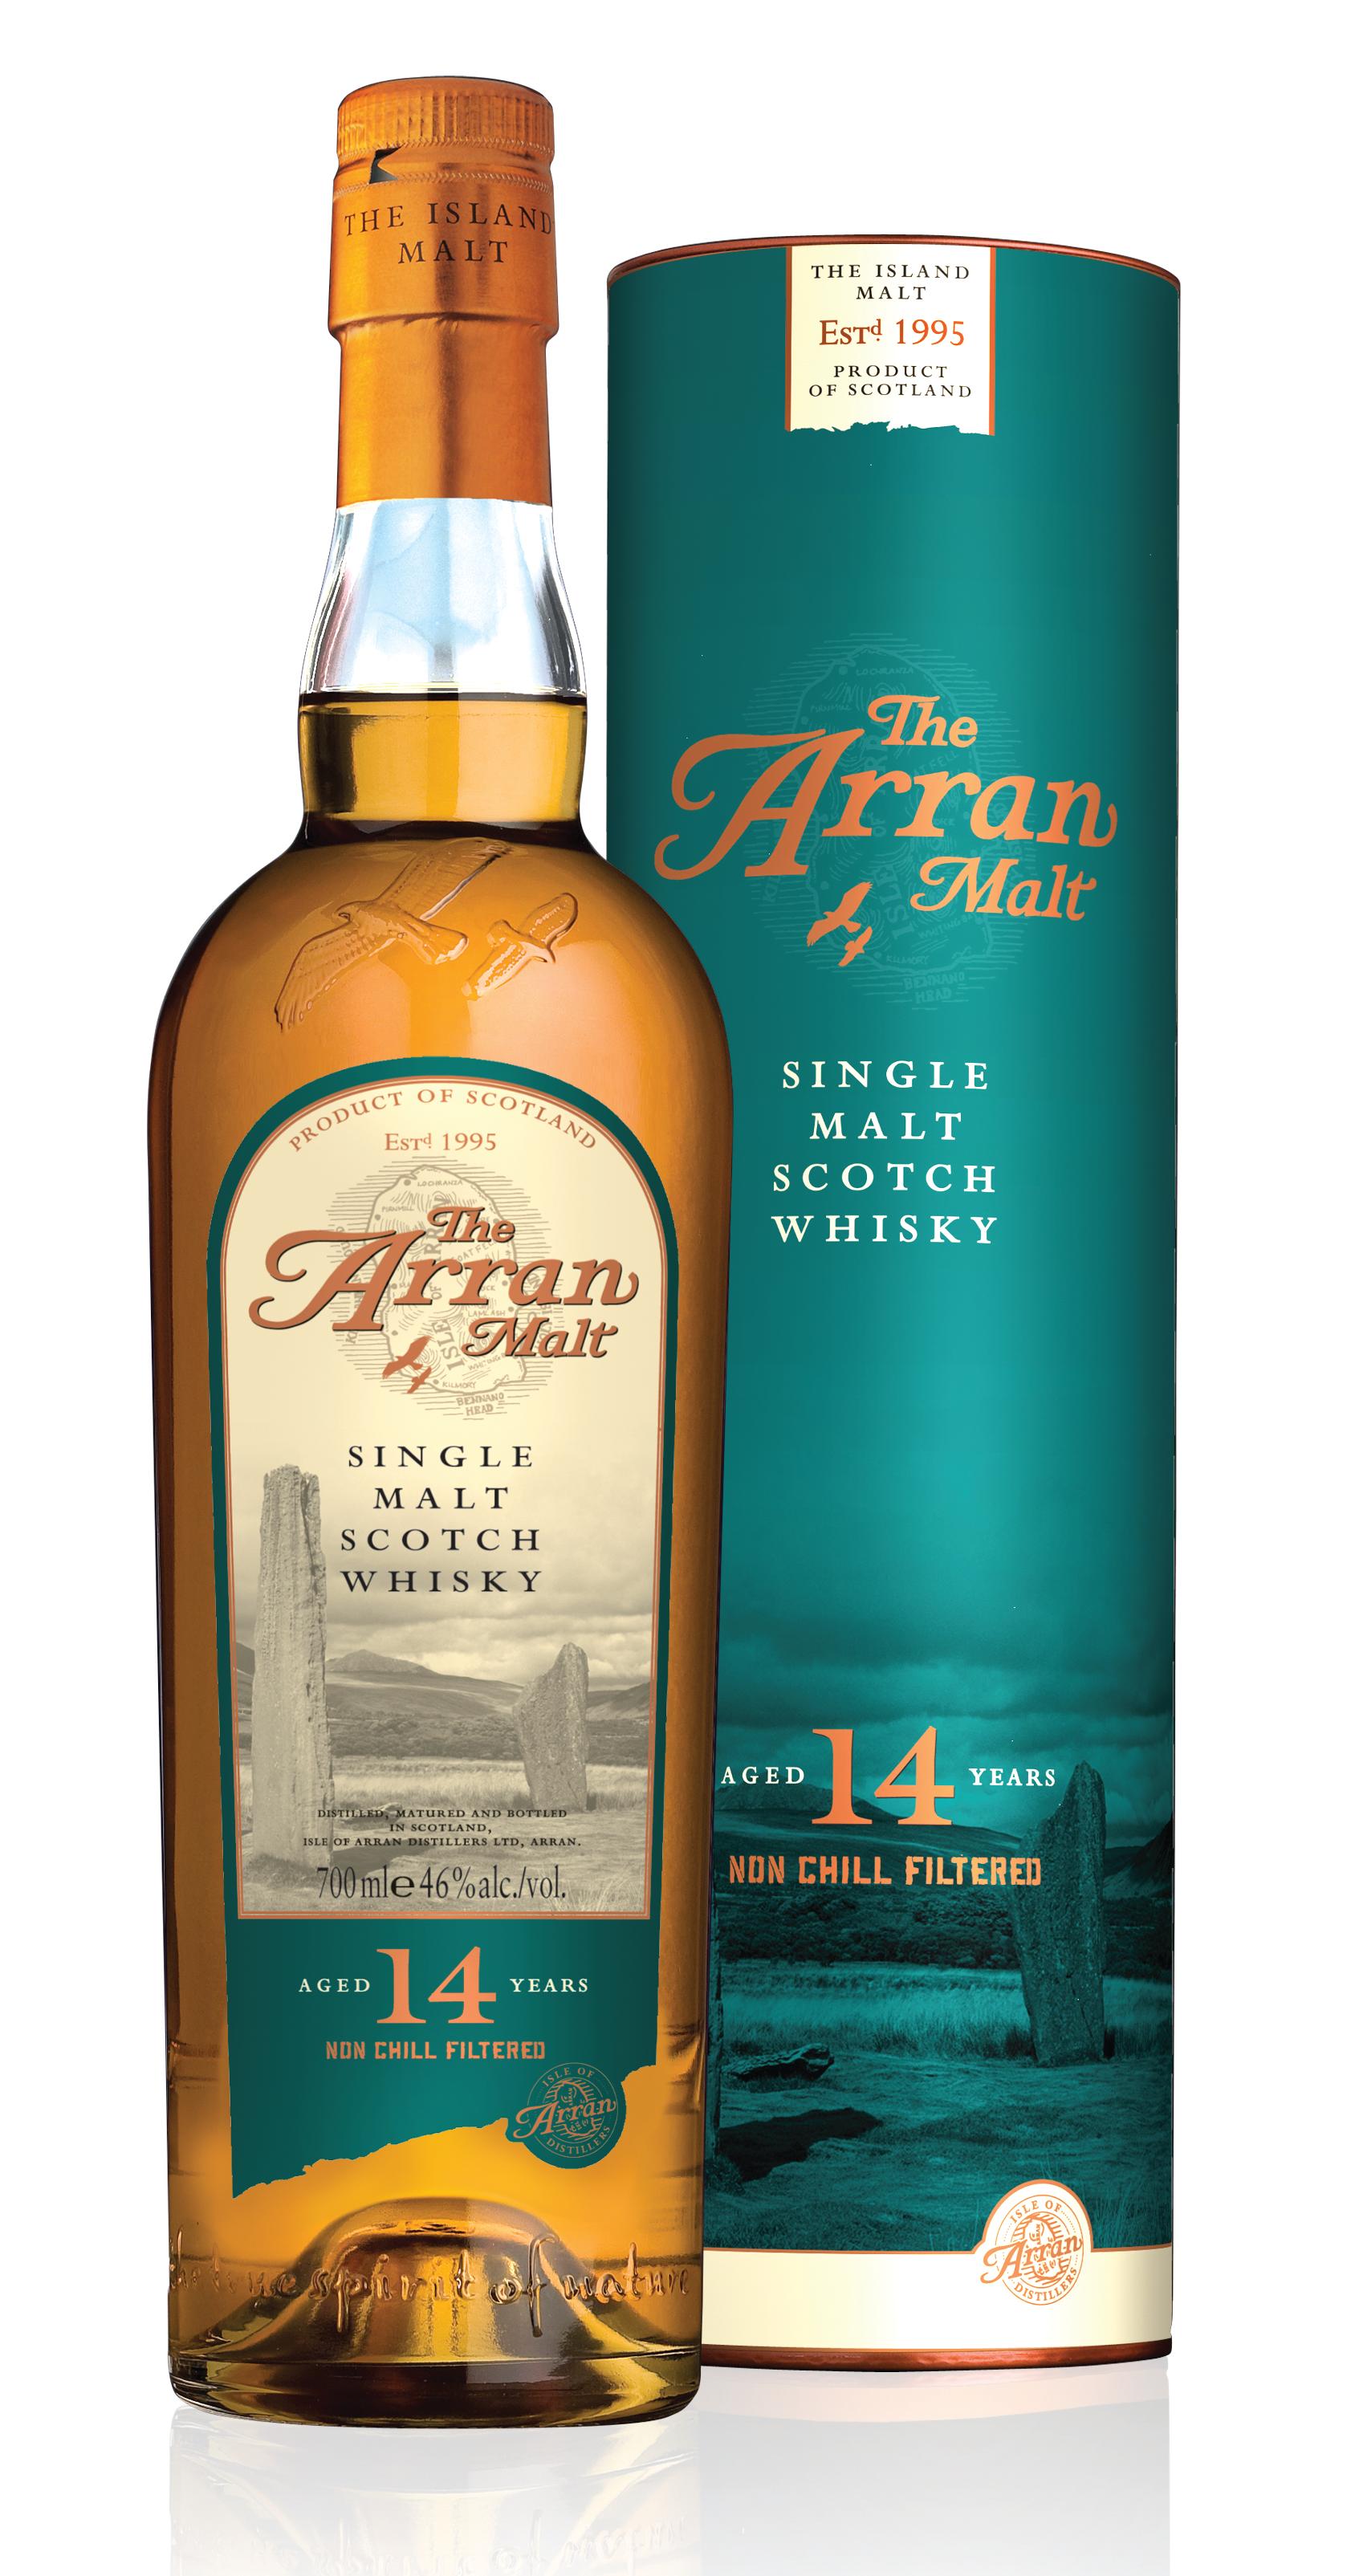 Award-winning Whisky & Distillery, Isle of Arran